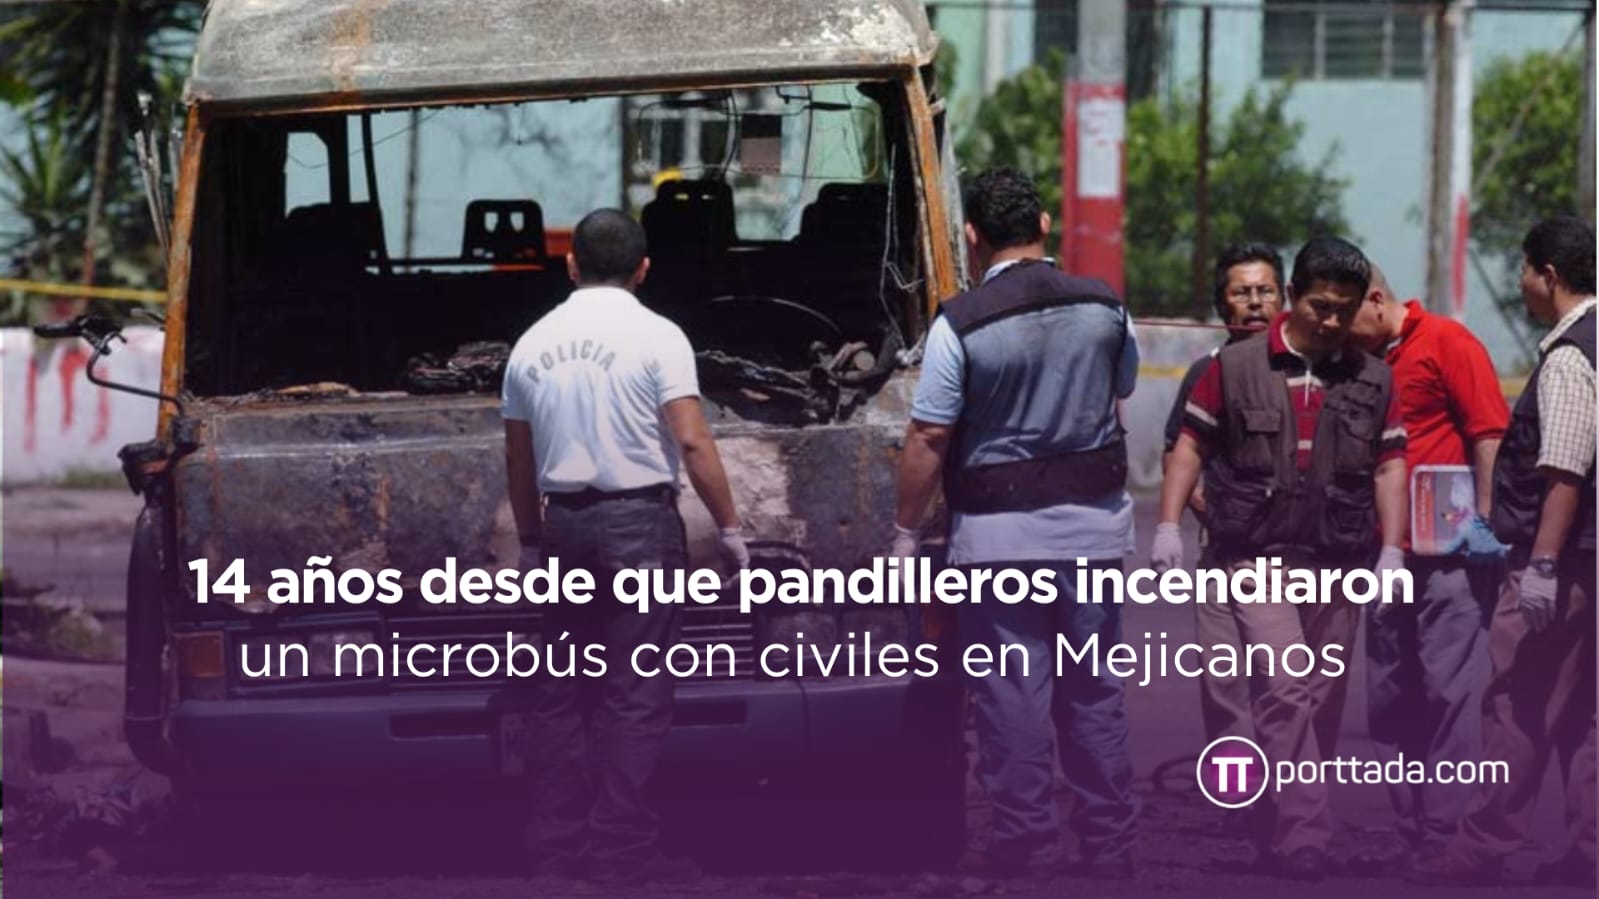 14-anos-desde-que-pandilleros-incendiaron-un-microbus-con-civiles-en-mejicanos